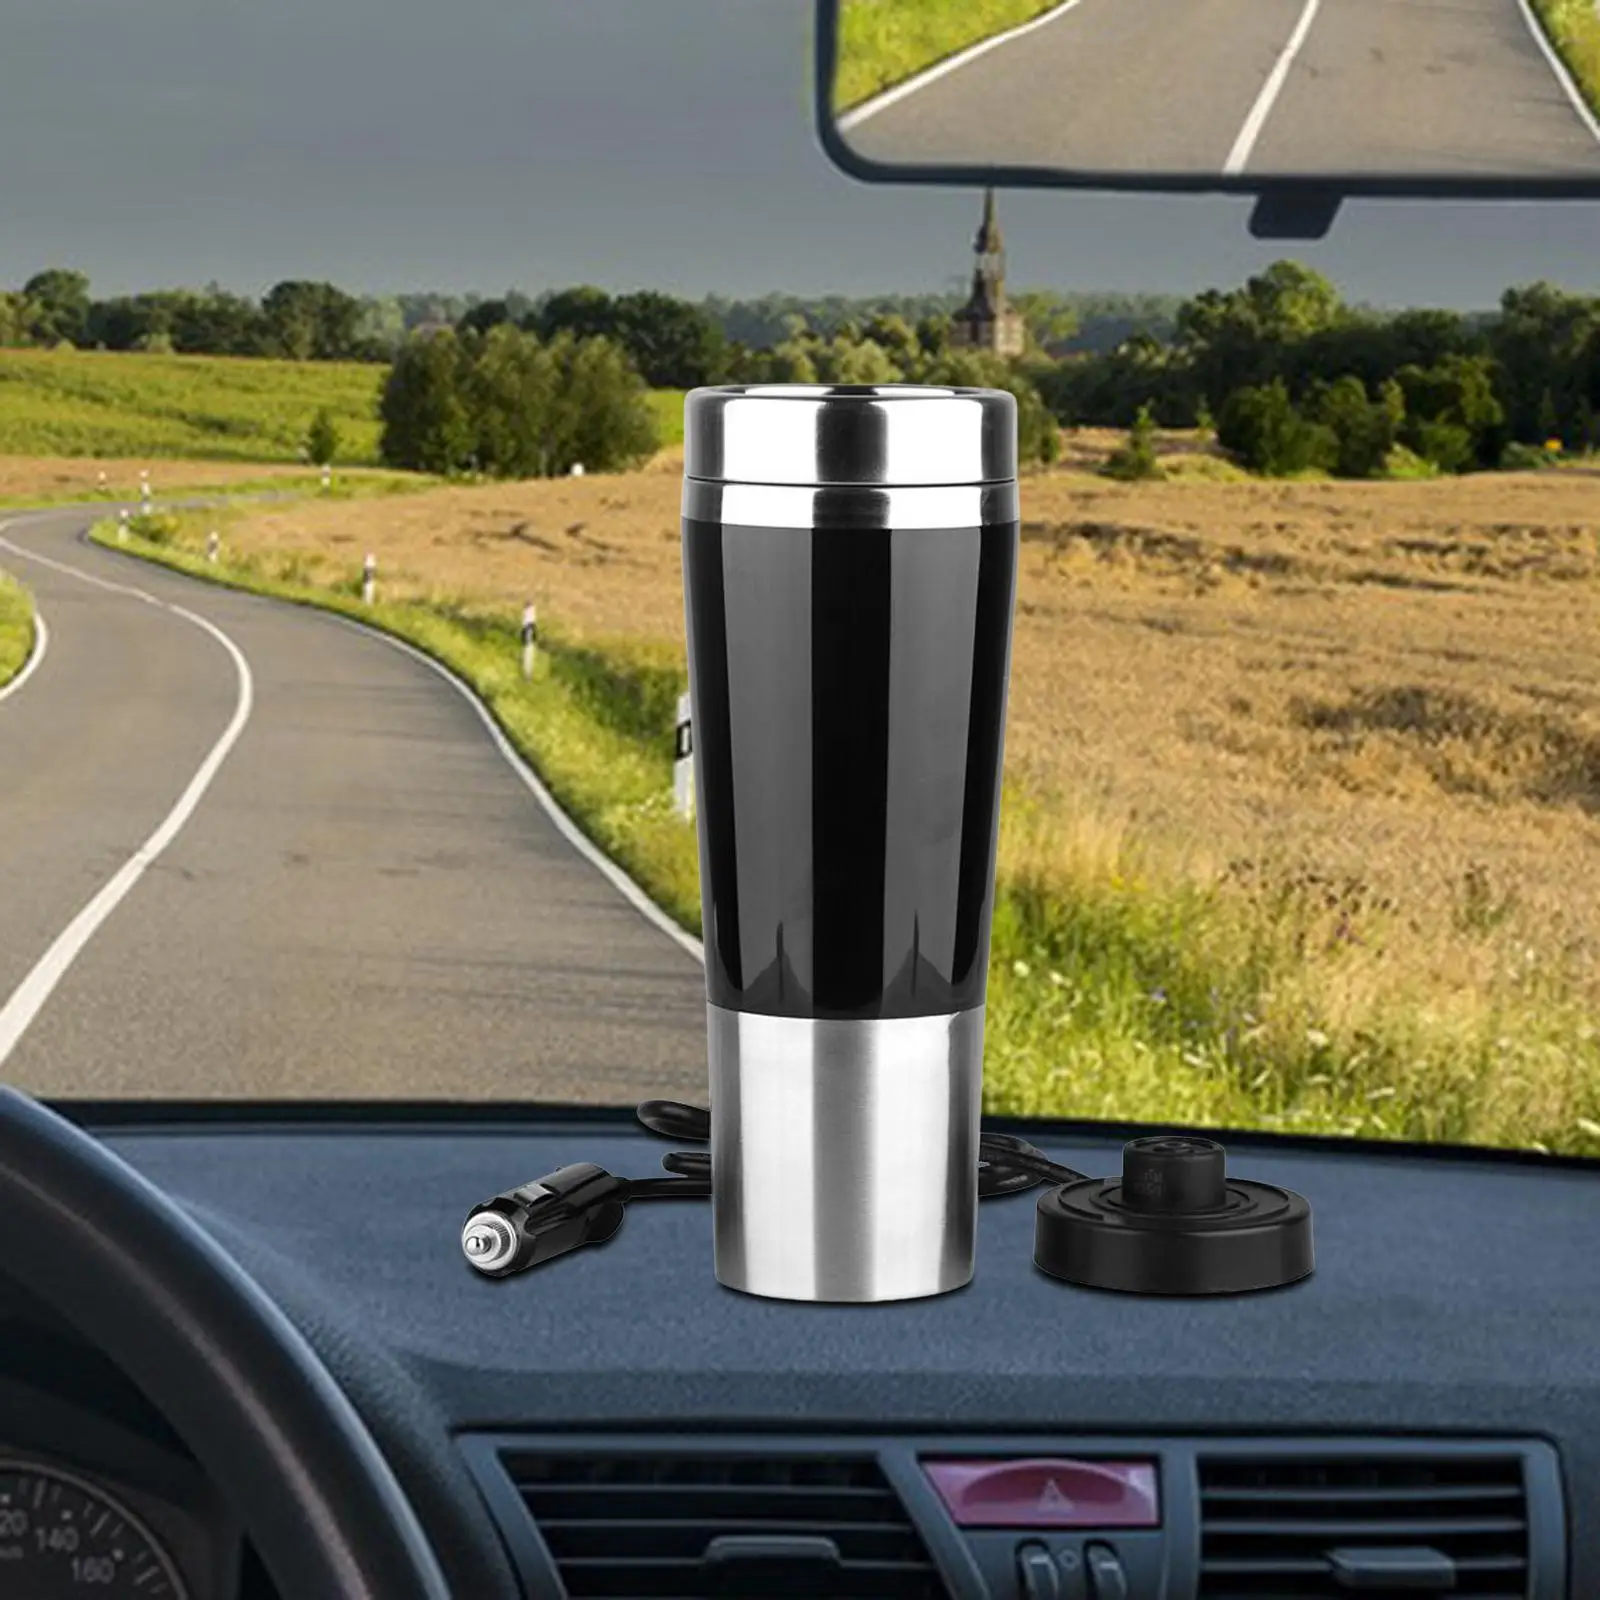 12V Car Kettle Boiler Warmer Stainless Steel Heater Cup for Milk Travel